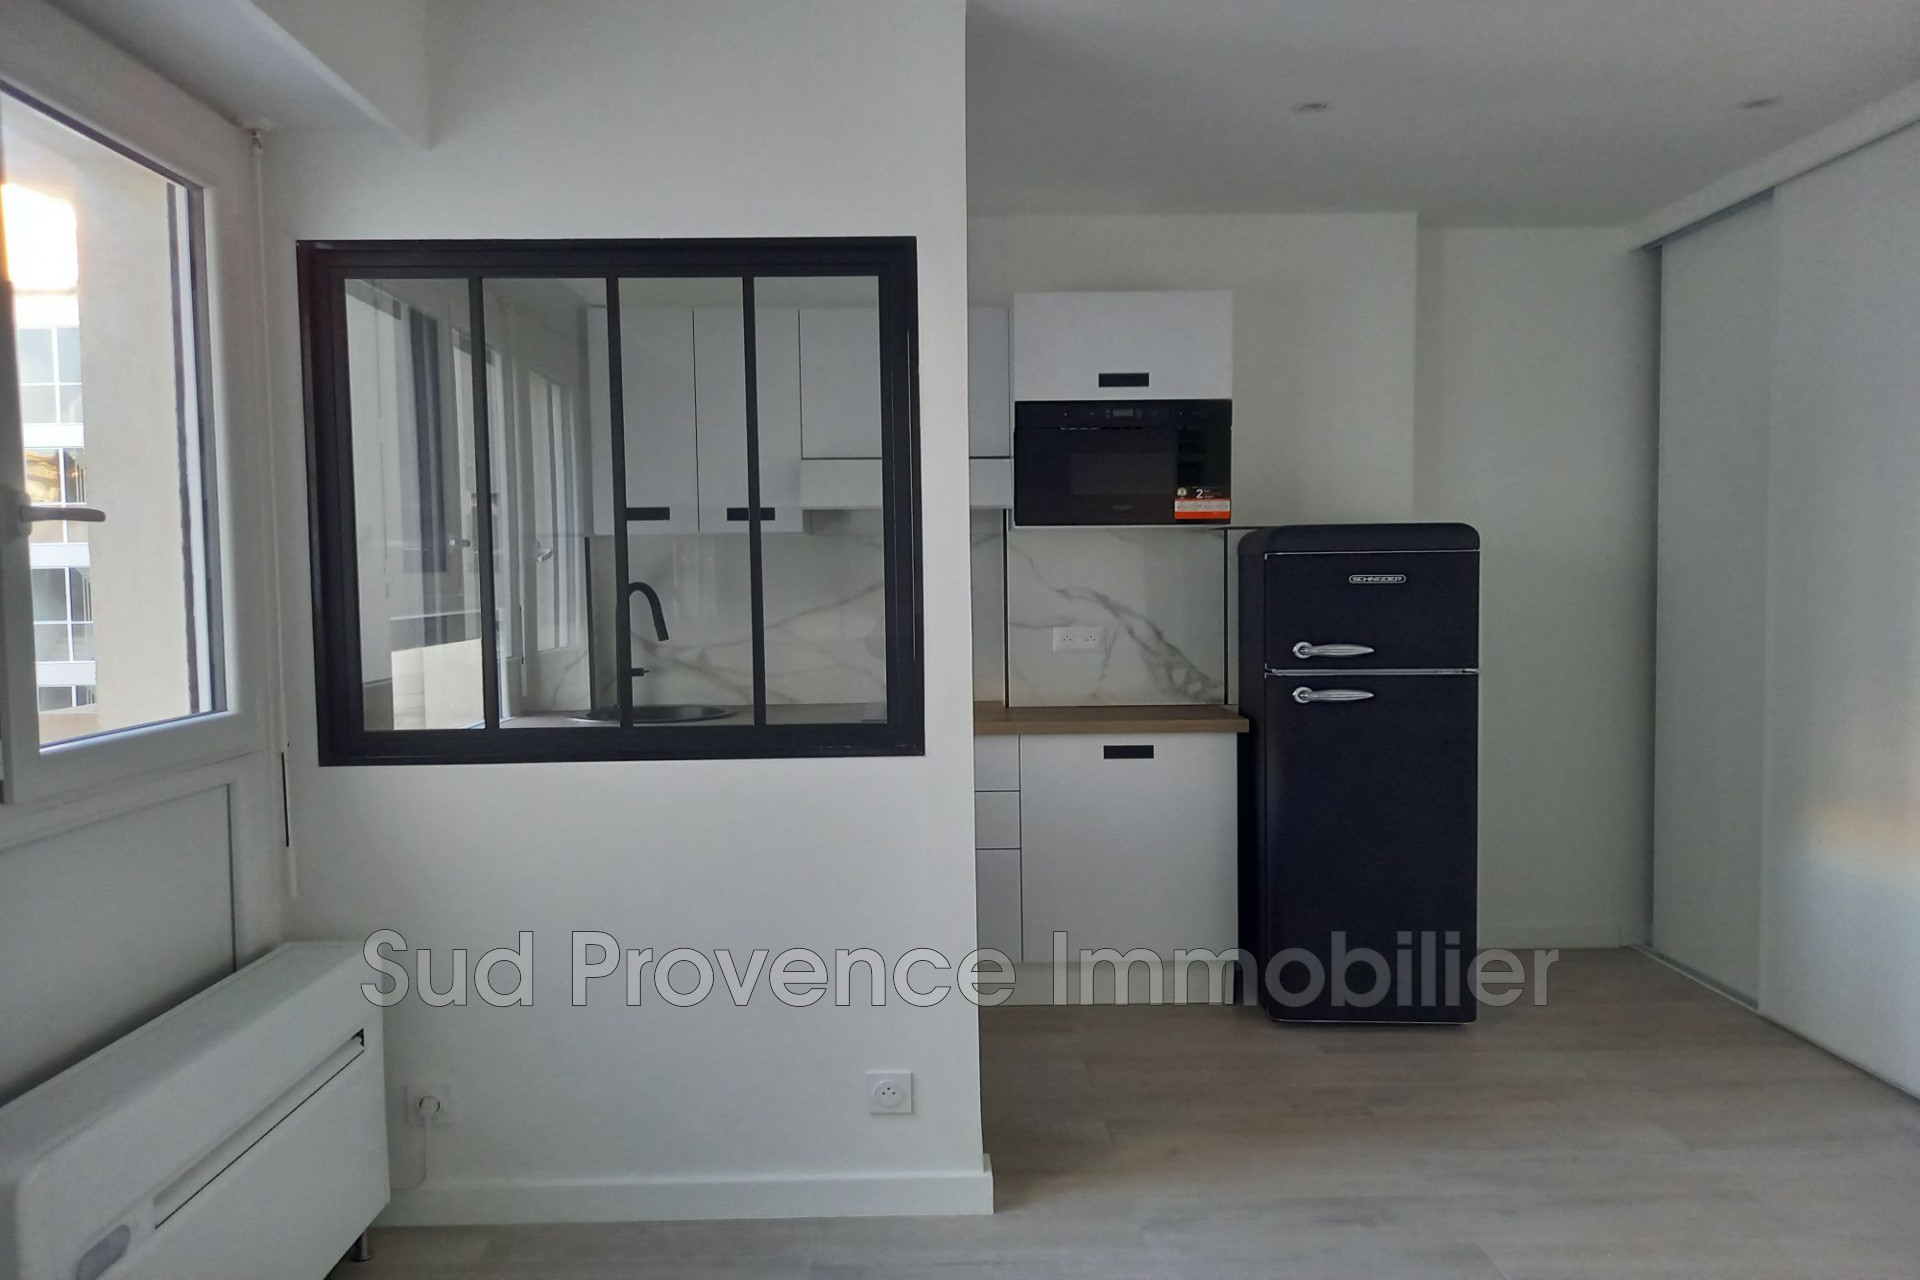 Vente Appartement 24m² 1 Pièce à Le Cannet (06110) - Sud Provence Immobilier